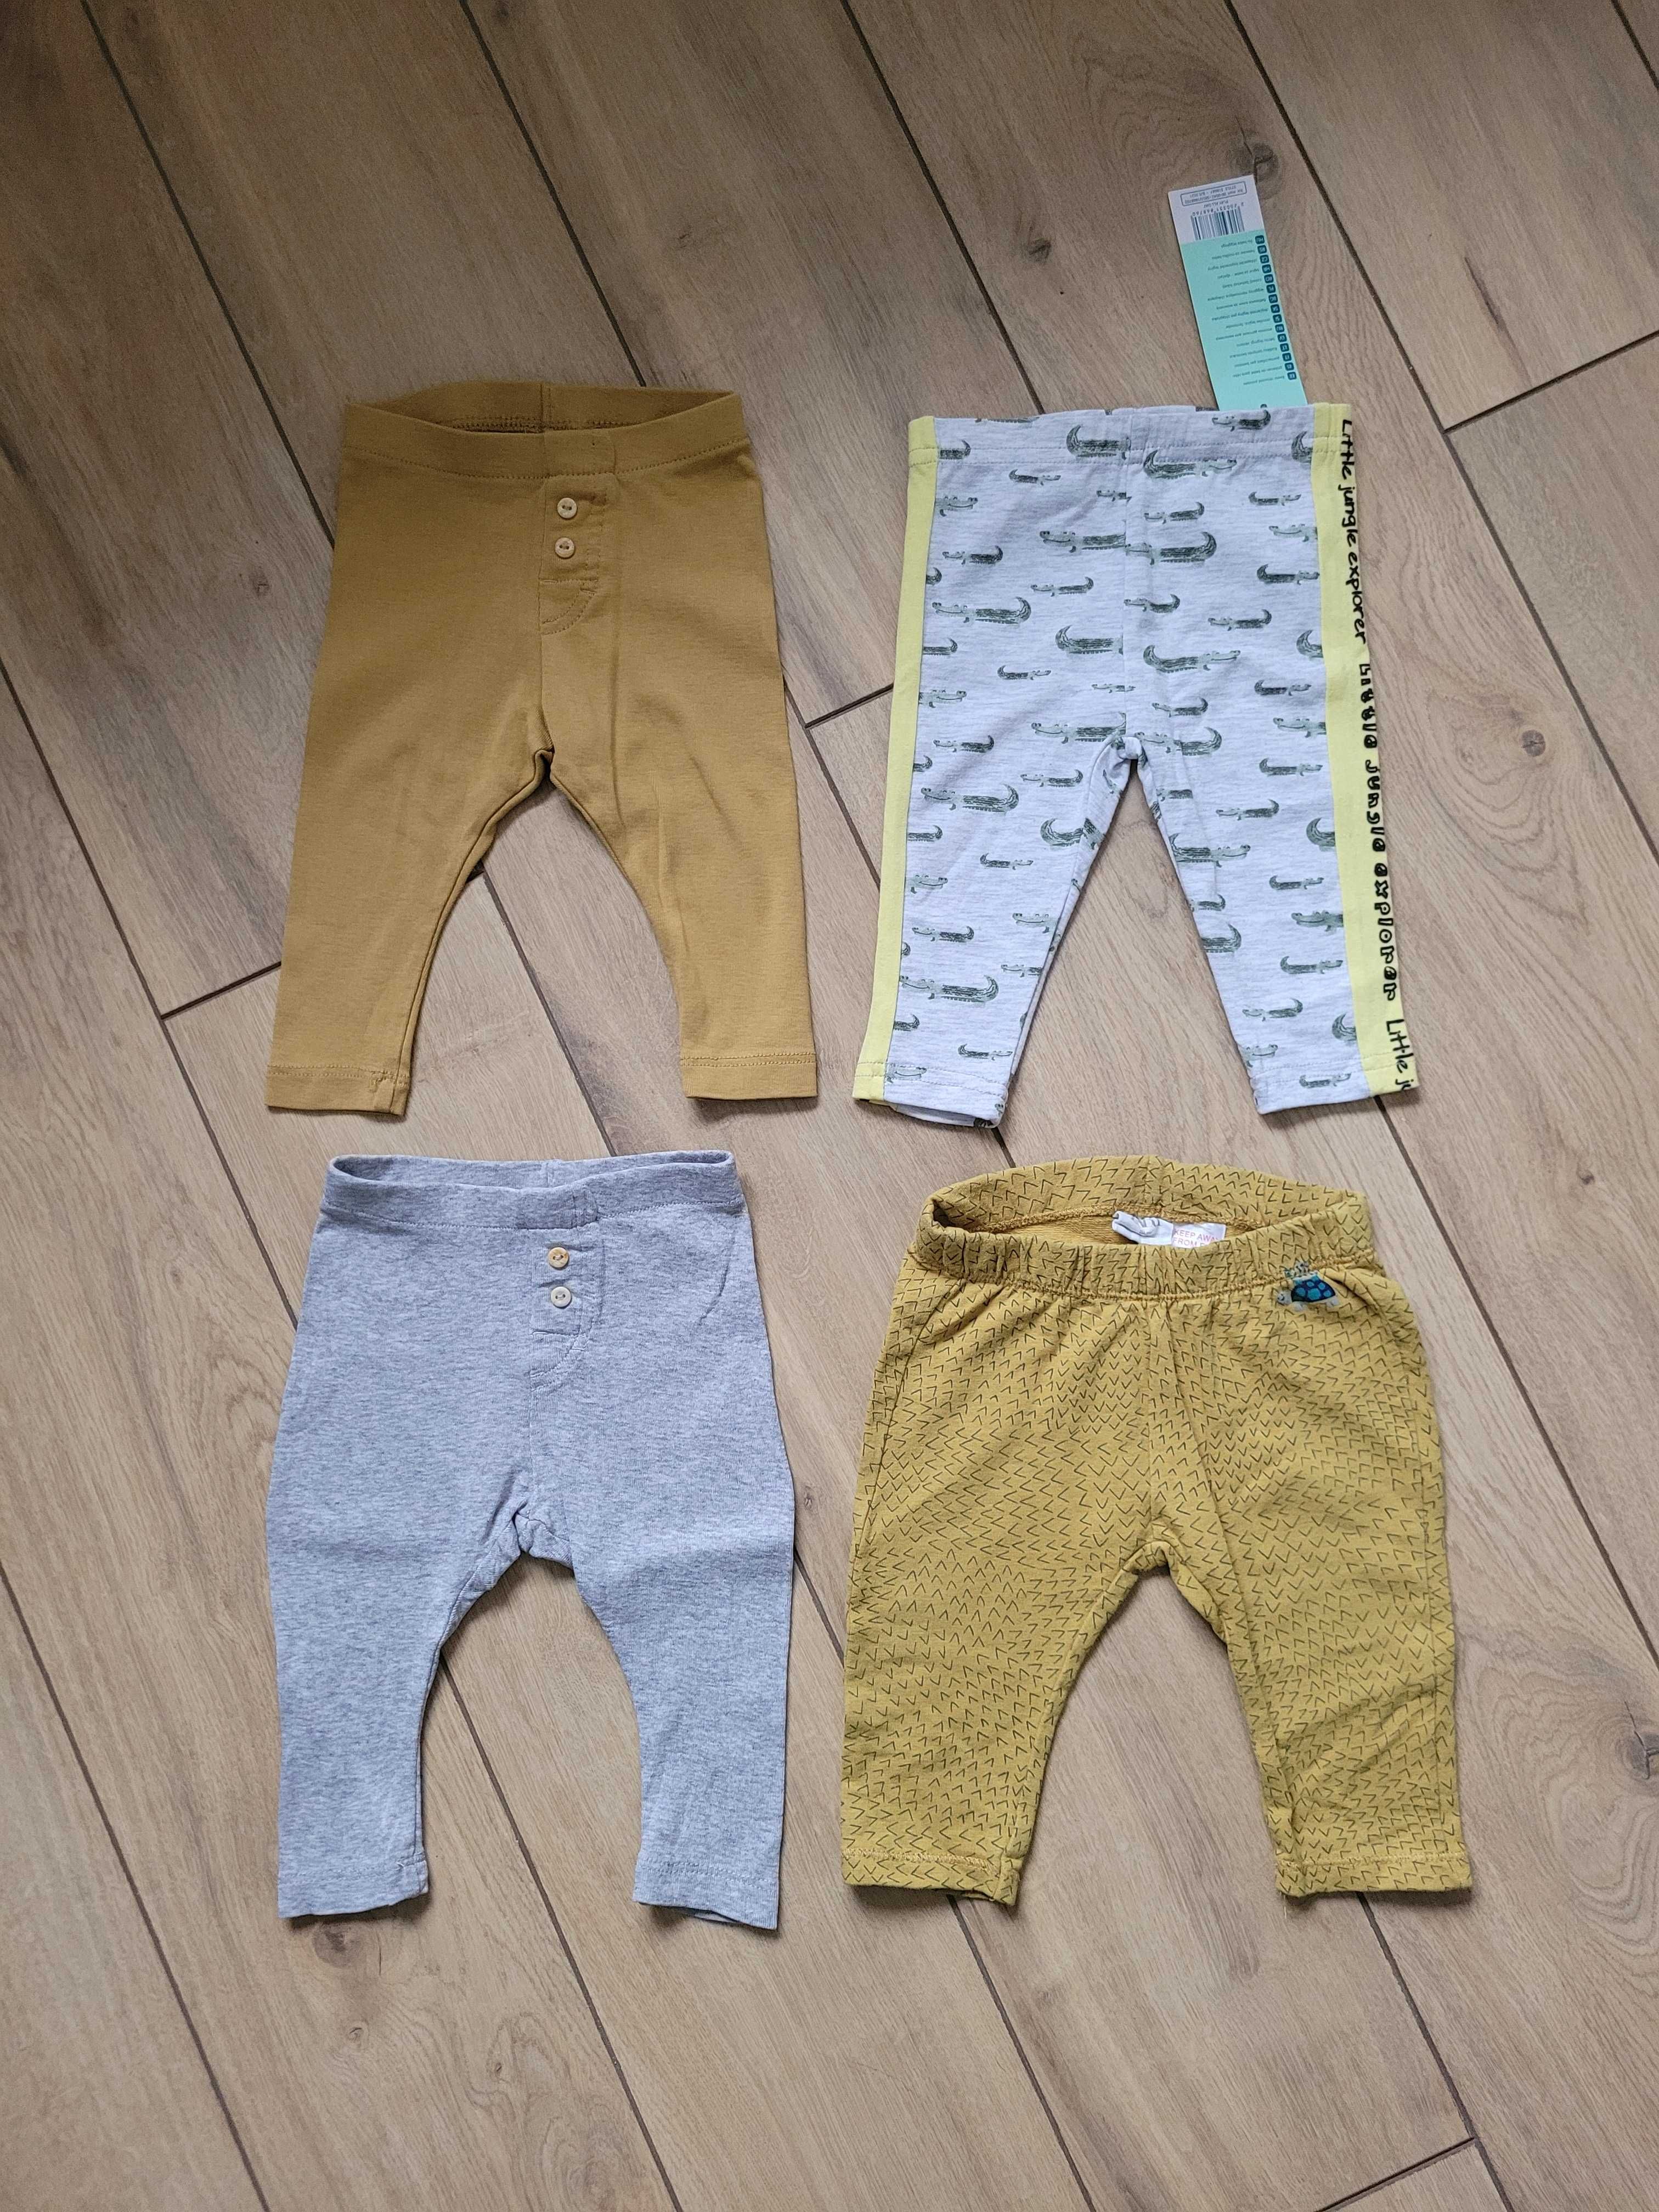 Legginsy (nowe) unisex 4szt 68 3-6 H&M Zara spodnie niemowlęce